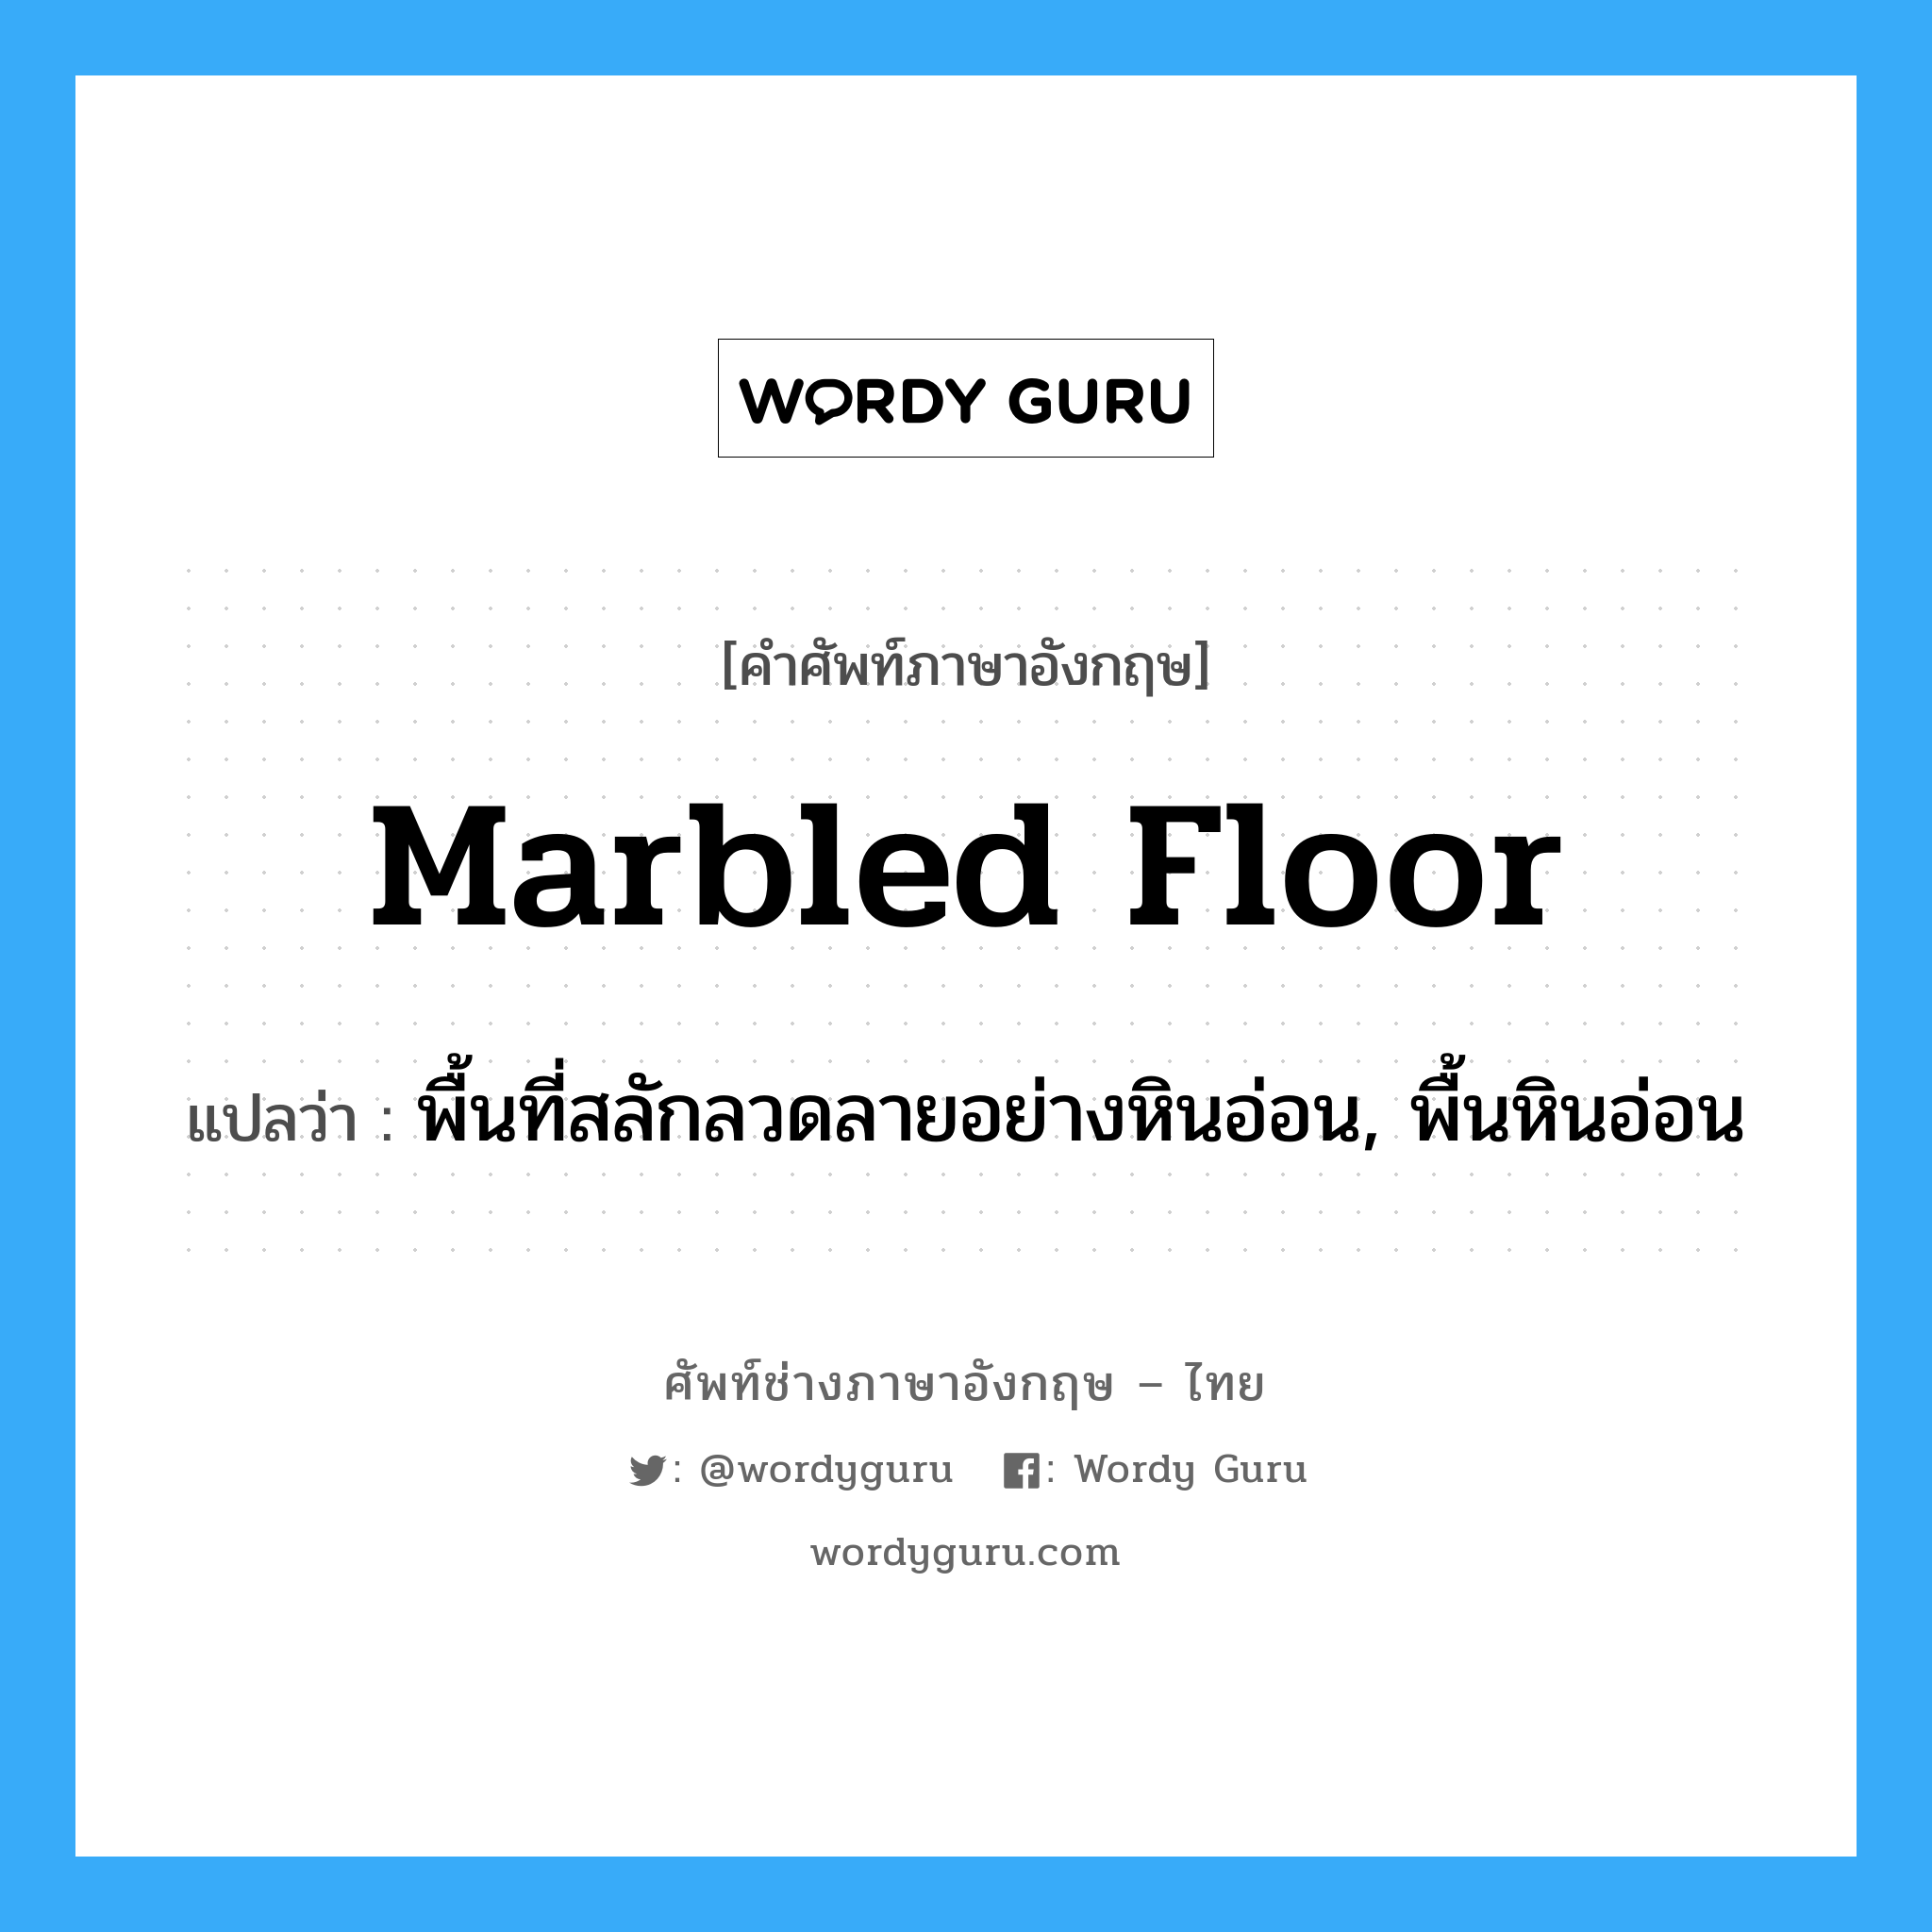 marbled floor แปลว่า?, คำศัพท์ช่างภาษาอังกฤษ - ไทย marbled floor คำศัพท์ภาษาอังกฤษ marbled floor แปลว่า พื้นที่สลักลวดลายอย่างหินอ่อน, พื้นหินอ่อน